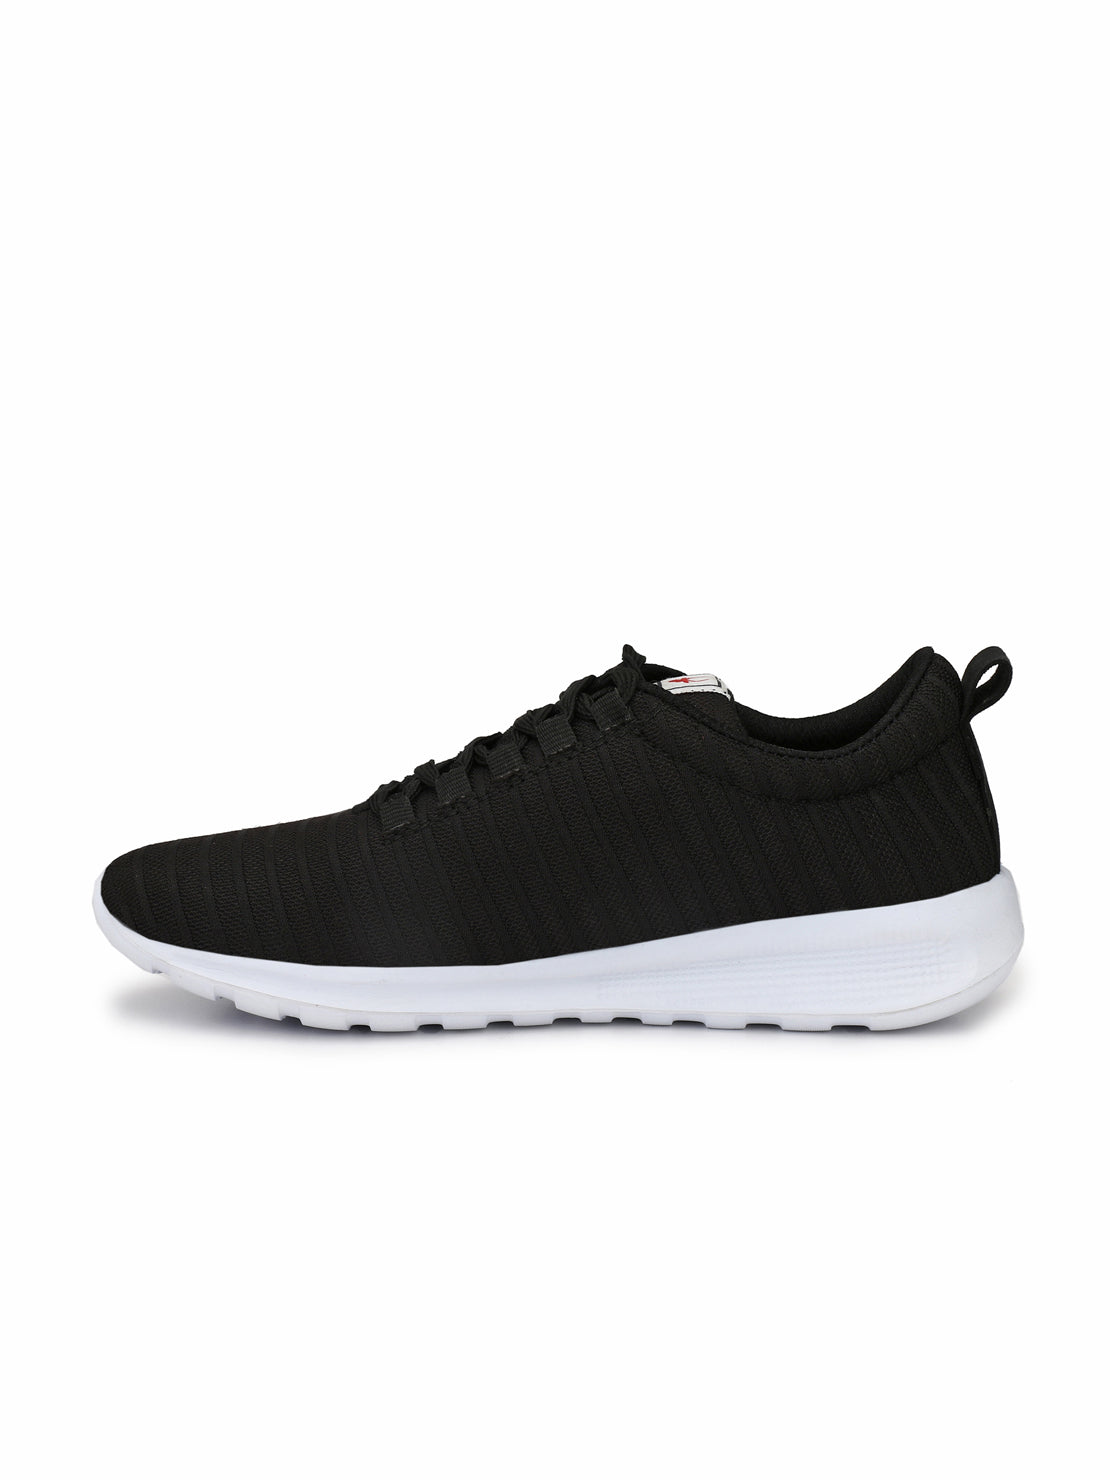 Hirolas® Men's Black Lite Lace Up Sneaker Sport Shoes (HRL1924BLK)